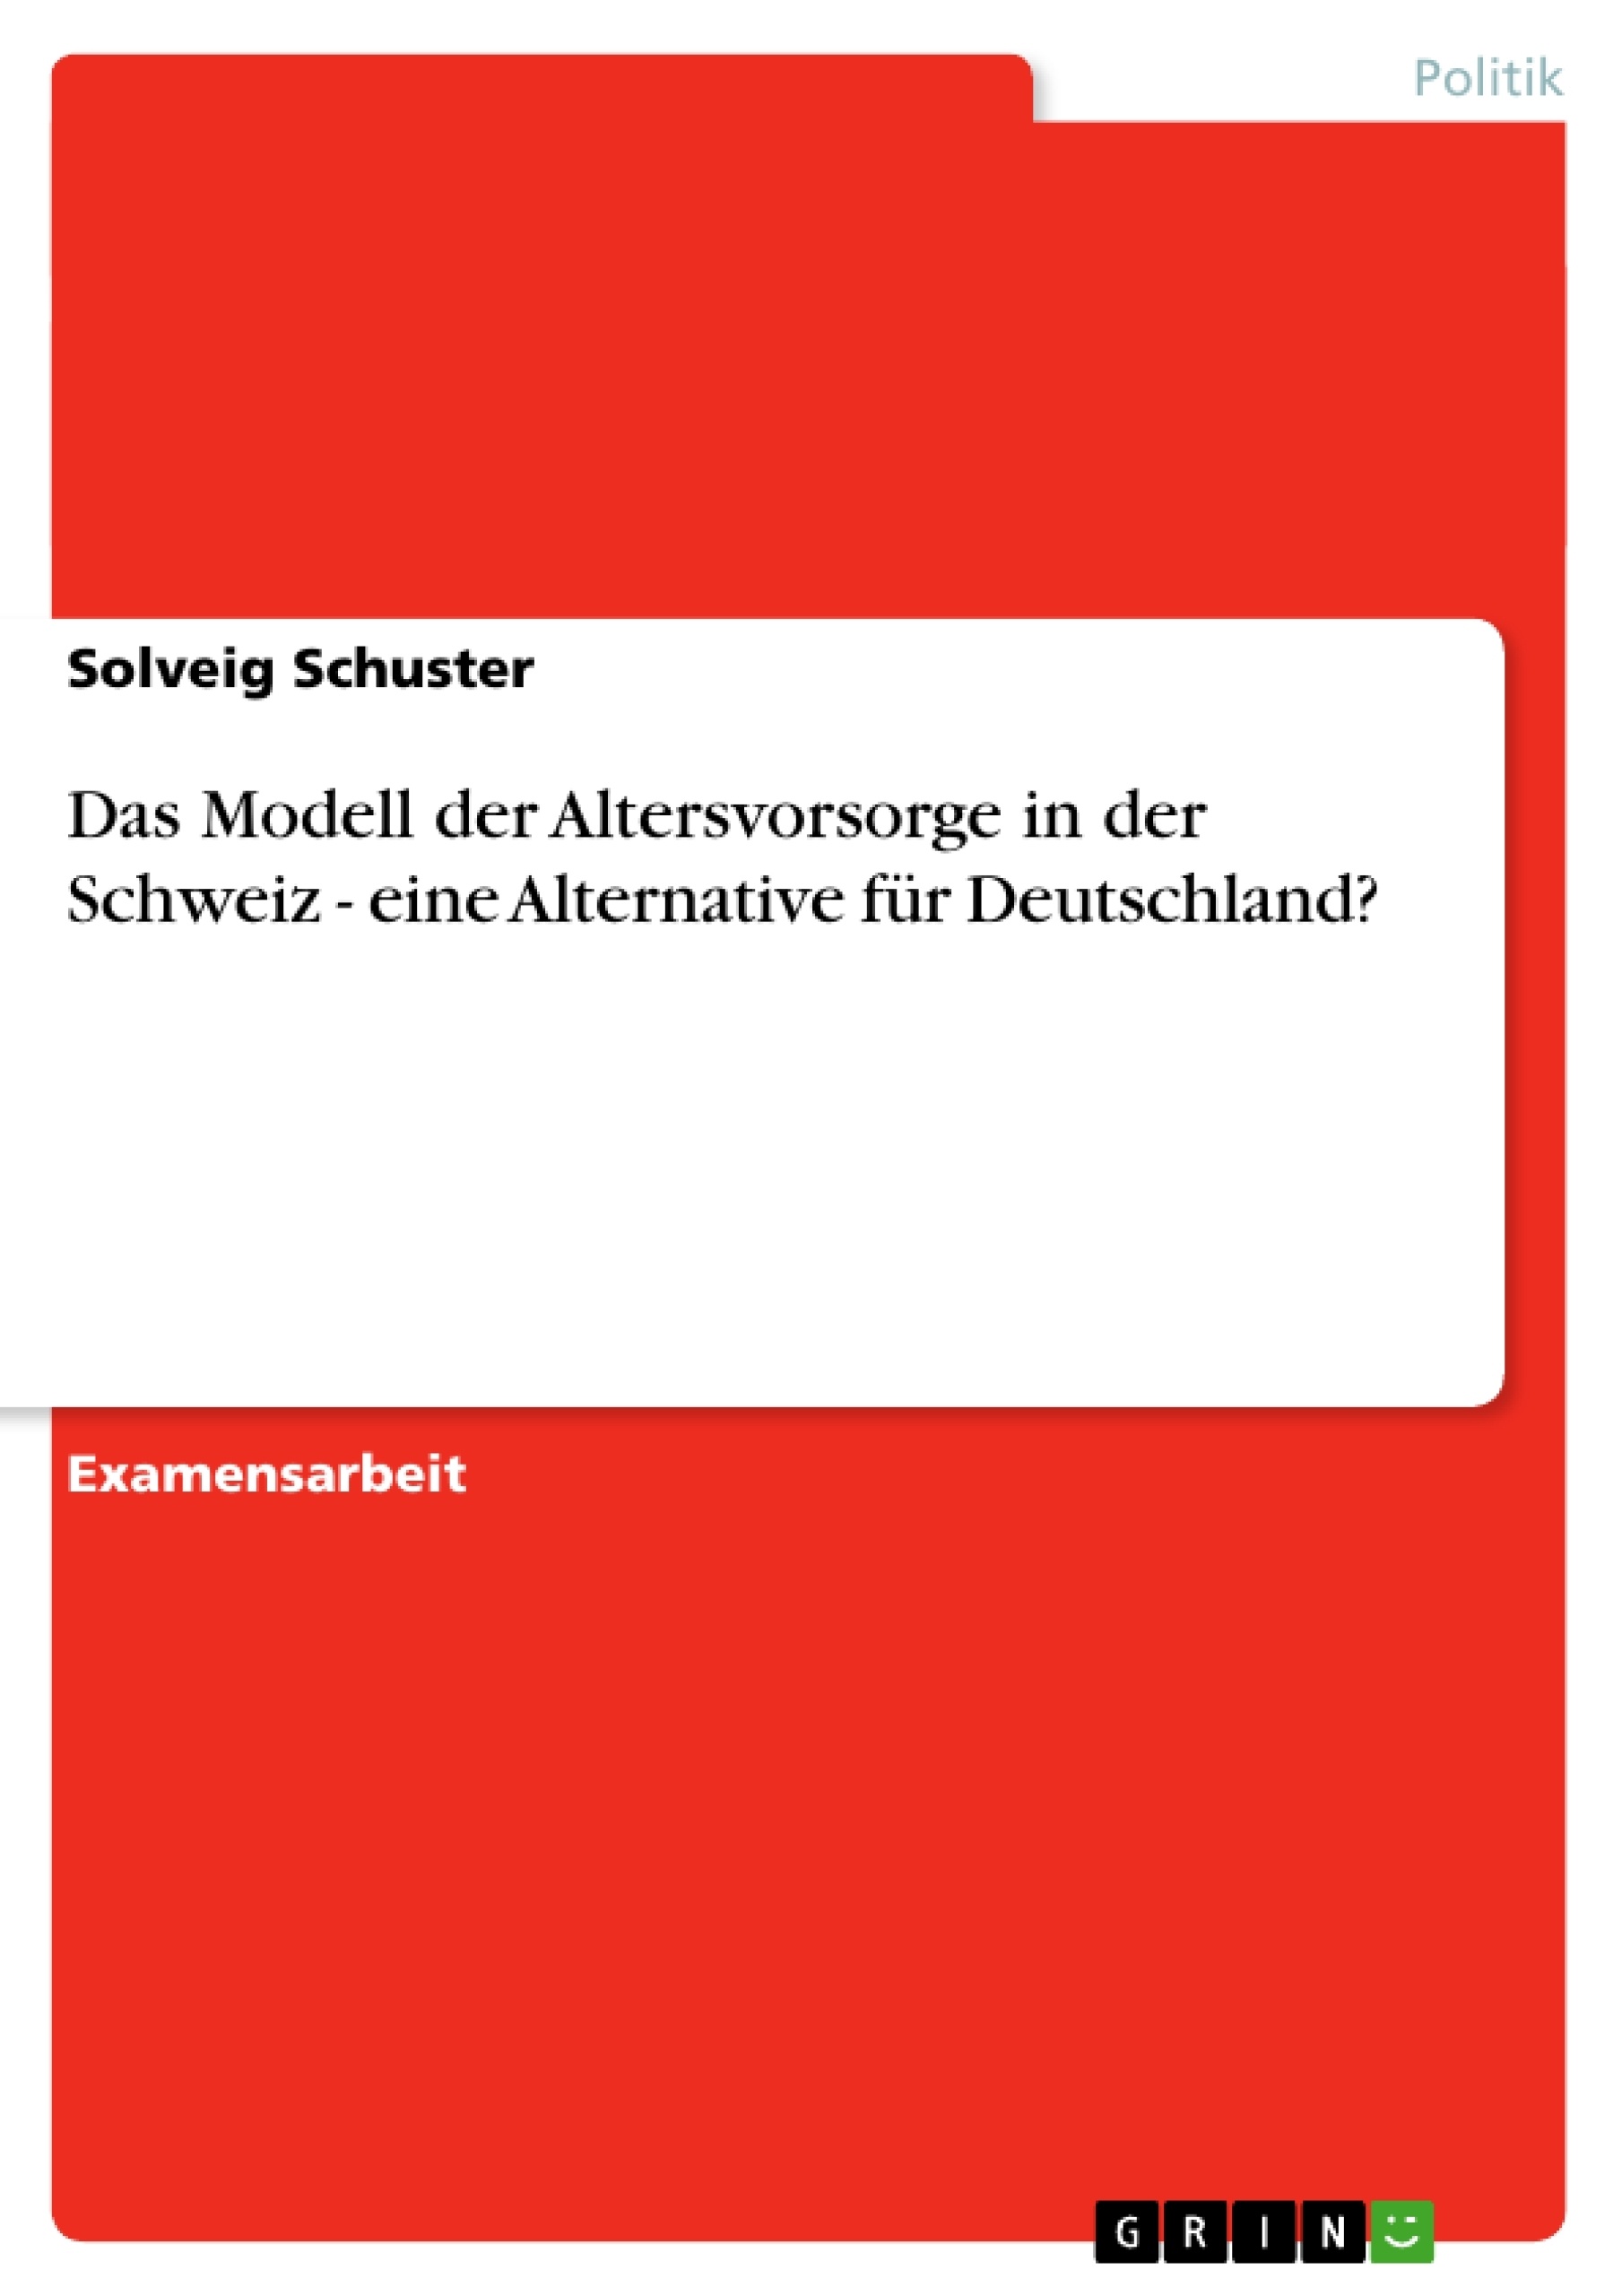 Titre: Das Modell der Altersvorsorge in der Schweiz - eine Alternative für Deutschland?